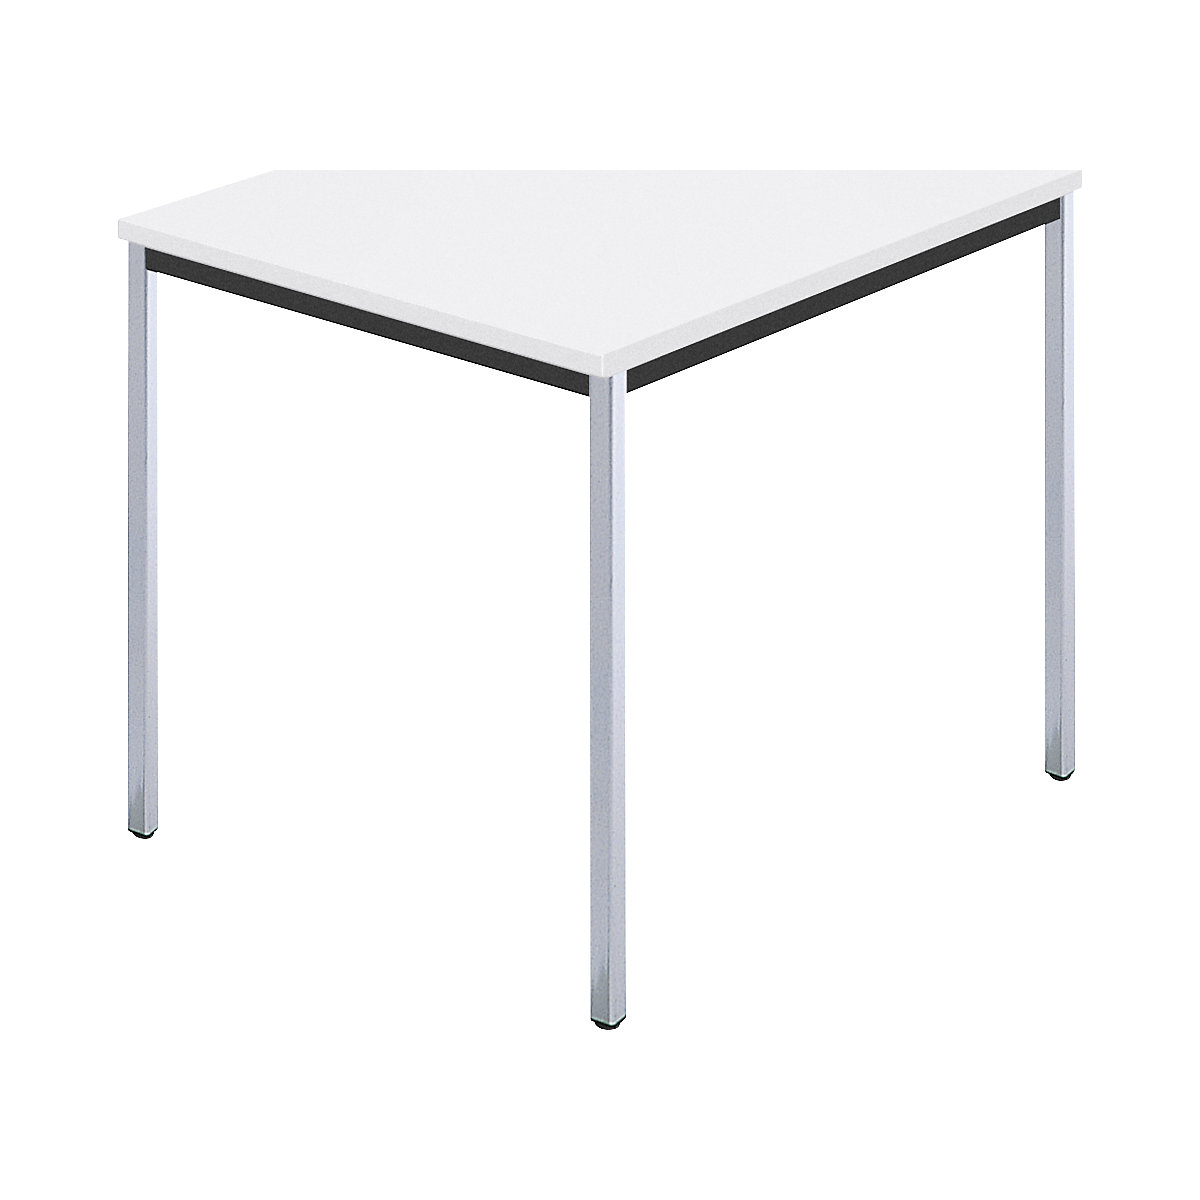 Rechthoekige tafel, met vierkante, verchroomde tafelpoten, b x d = 800 x 800 mm, wit-6